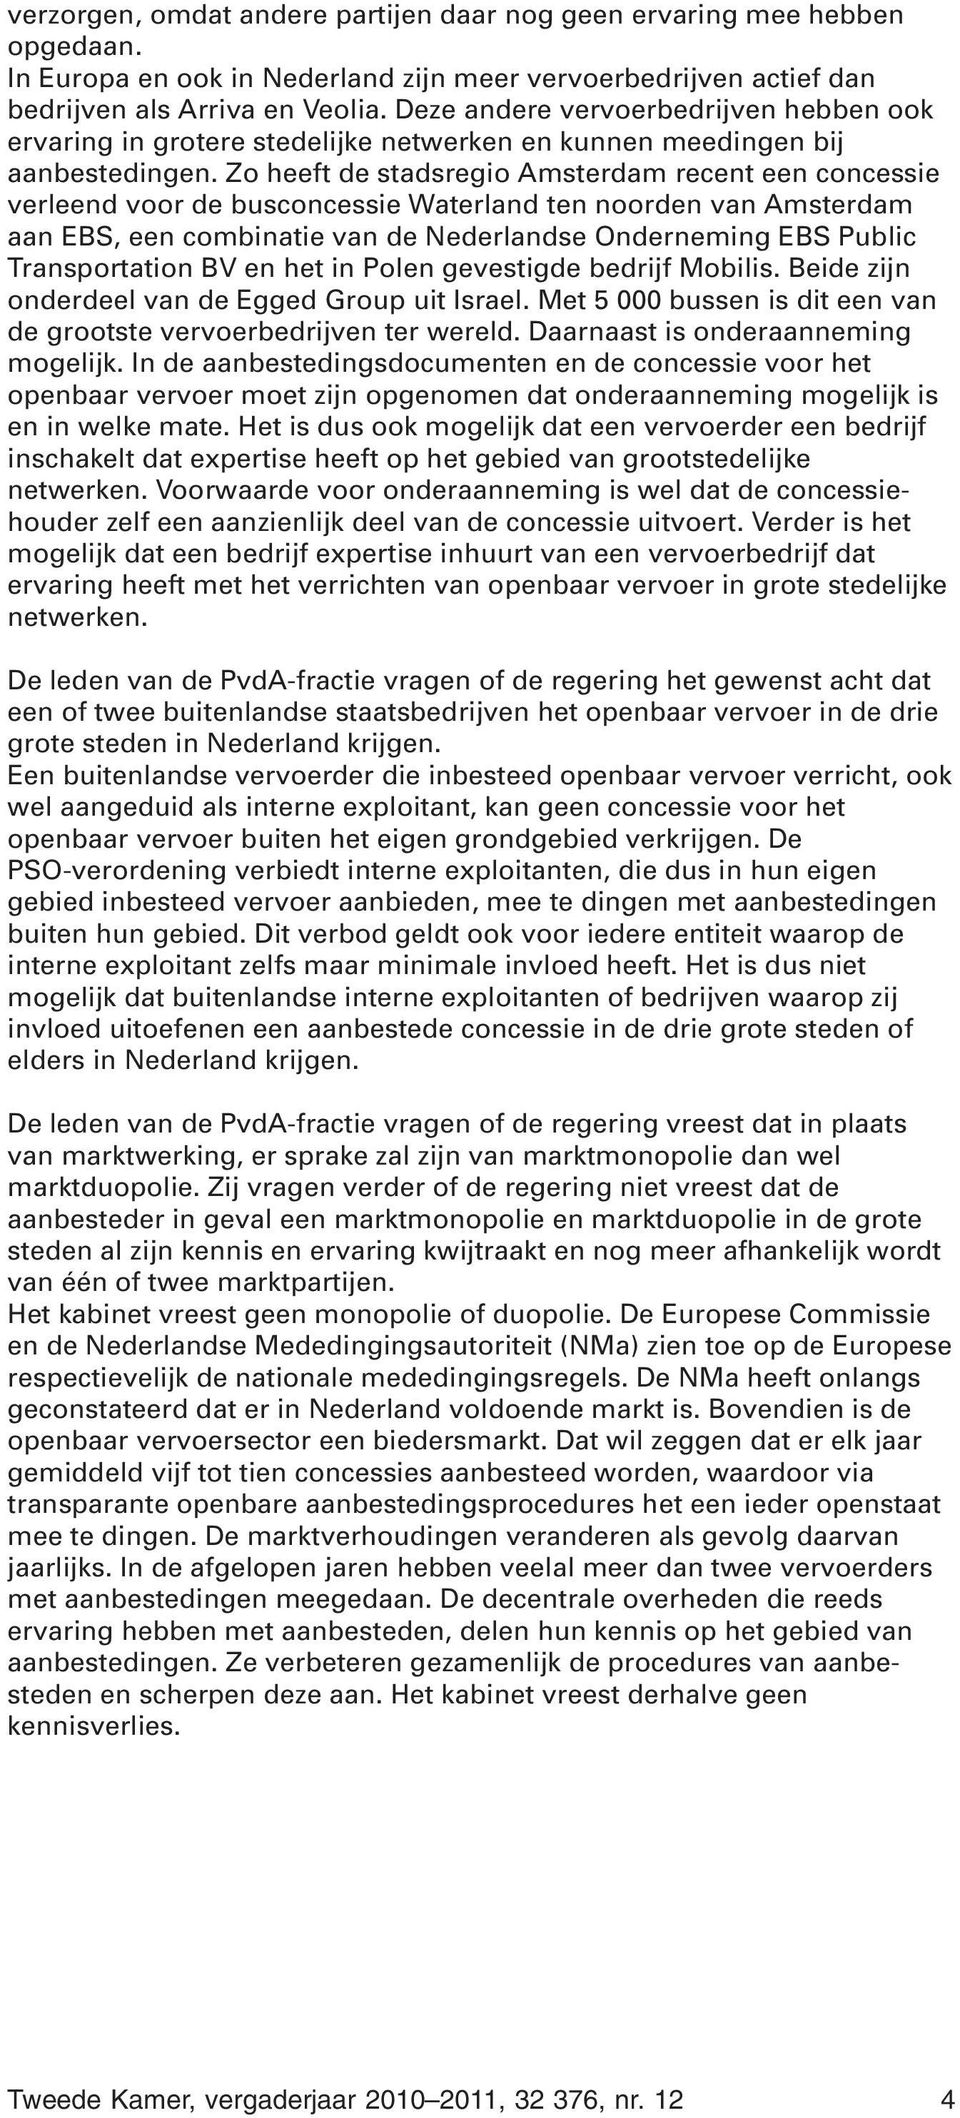 Zo heeft de stadsregio Amsterdam recent een concessie verleend voor de busconcessie Waterland ten noorden van Amsterdam aan EBS, een combinatie van de Nederlandse Onderneming EBS Public